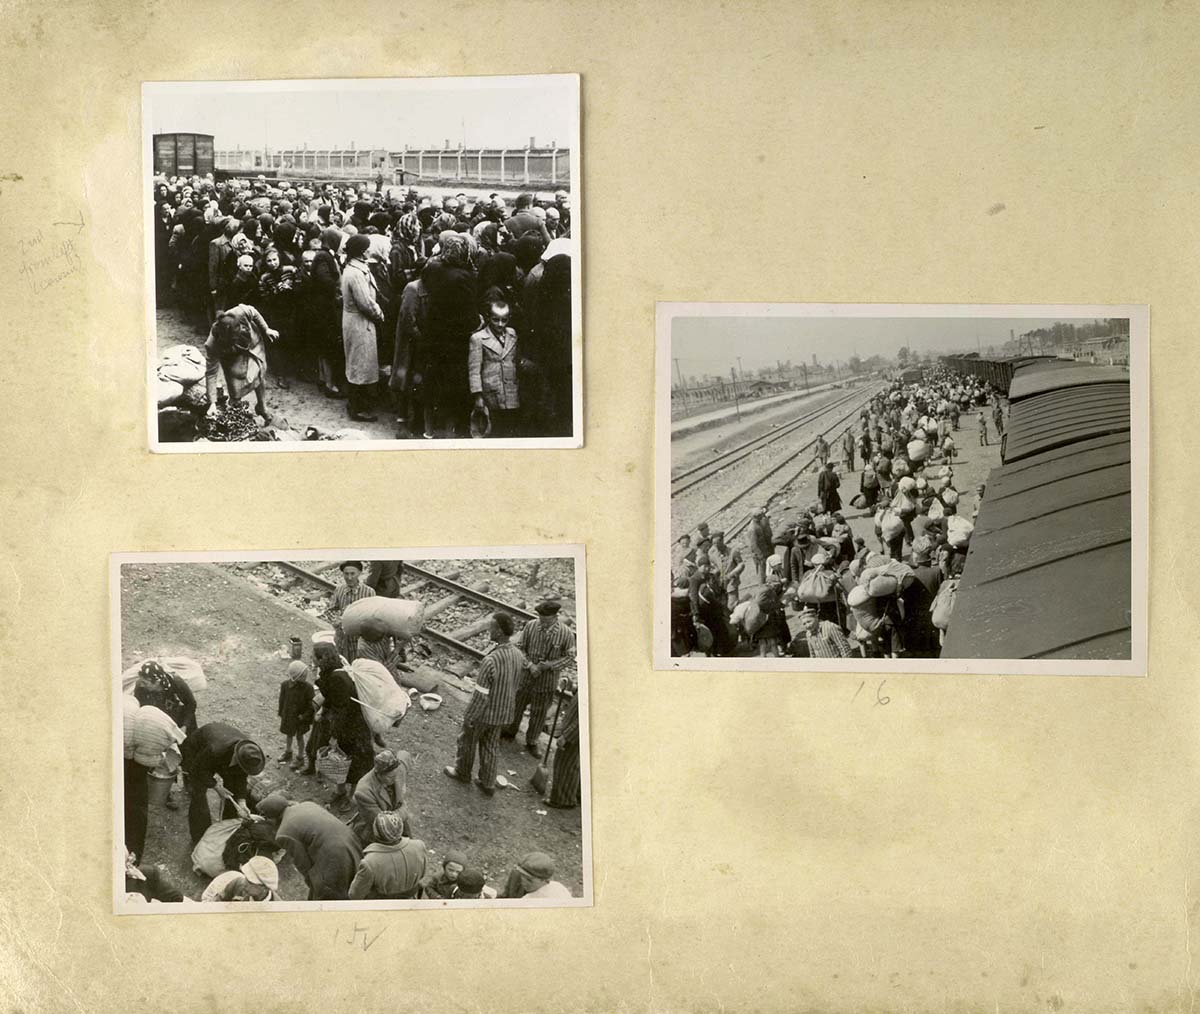 Прибывшие в лагерь евреи перед селекцией. Такие массовые сцены были обычным явлением летом 1944-го, когда процесс уничтожения венгерских евреев достиг своего апогея. На заднем плане виден Крематорий II, куда посылали обреченных на смерть евреев